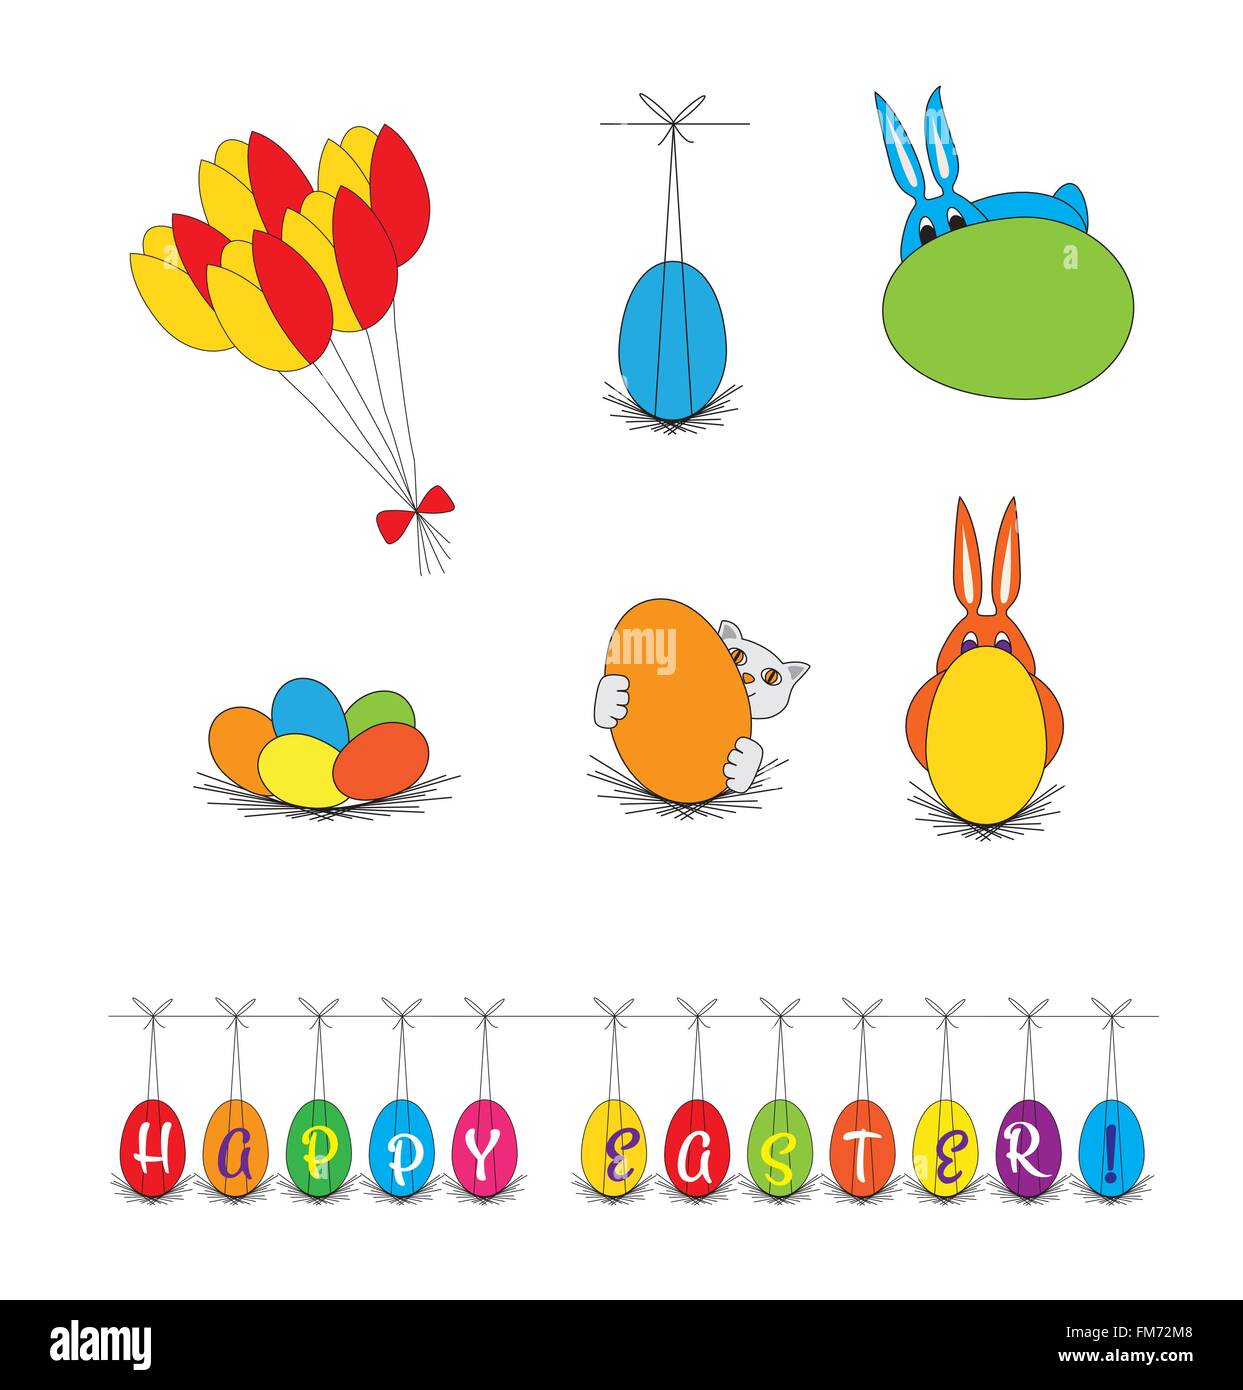 Vector - Ostern Elemente, ClipArt-Grafiken, Illustrationen, leuchtenden Farben. Hase und Katze versteckt sich hinter den Eiern, Blumen, banner Stock Vektor